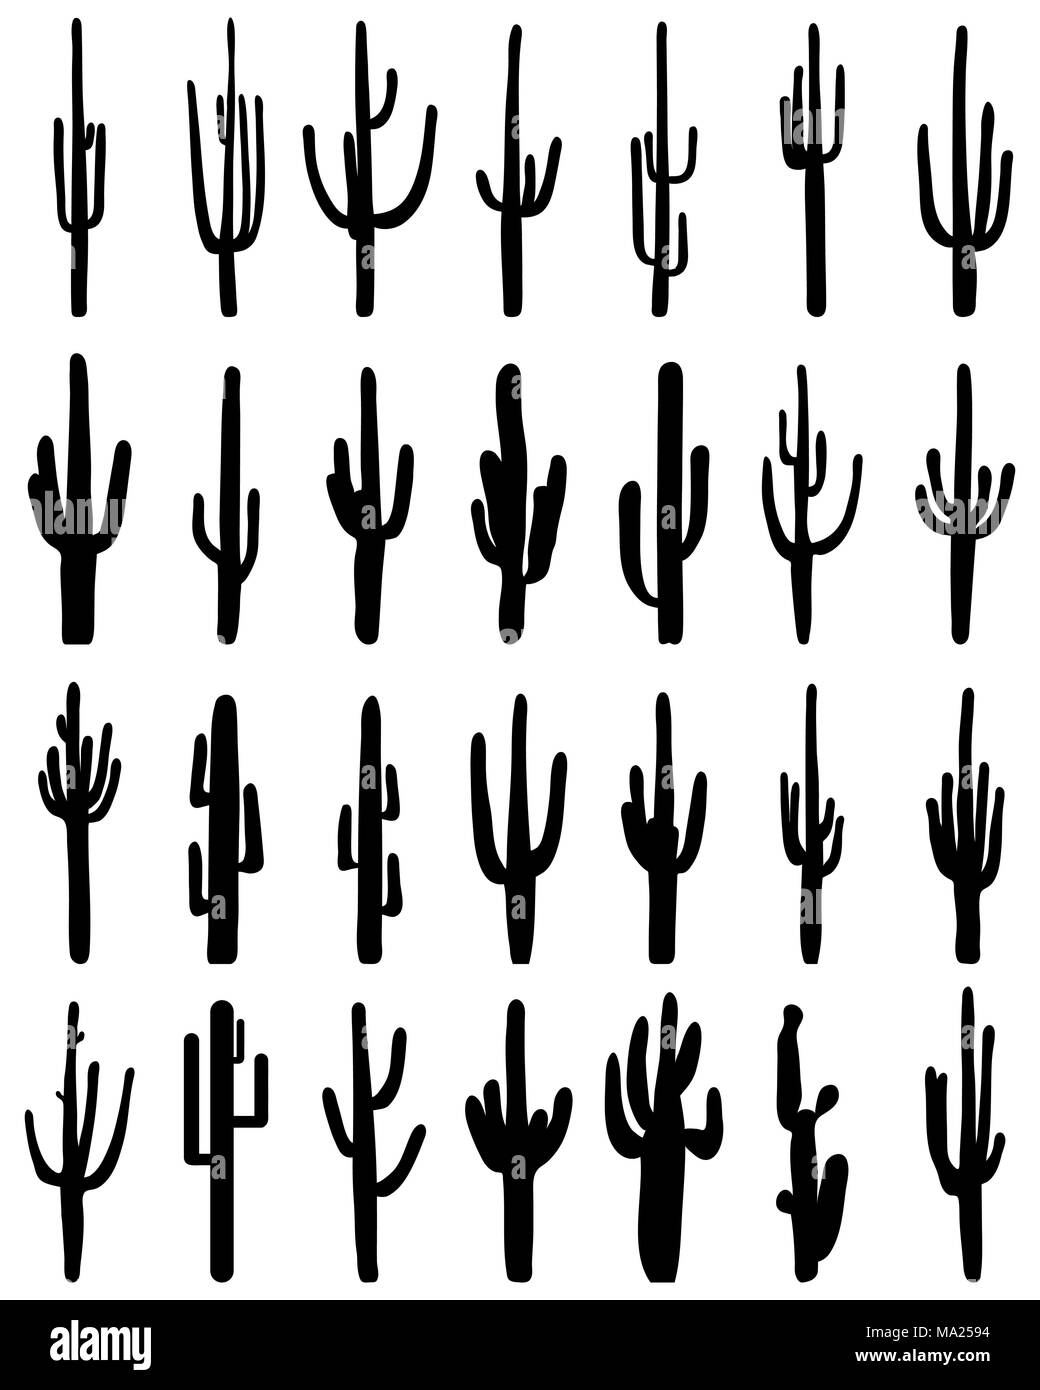 Silhouettes noires de différents cactus sur fond blanc, vector Banque D'Images